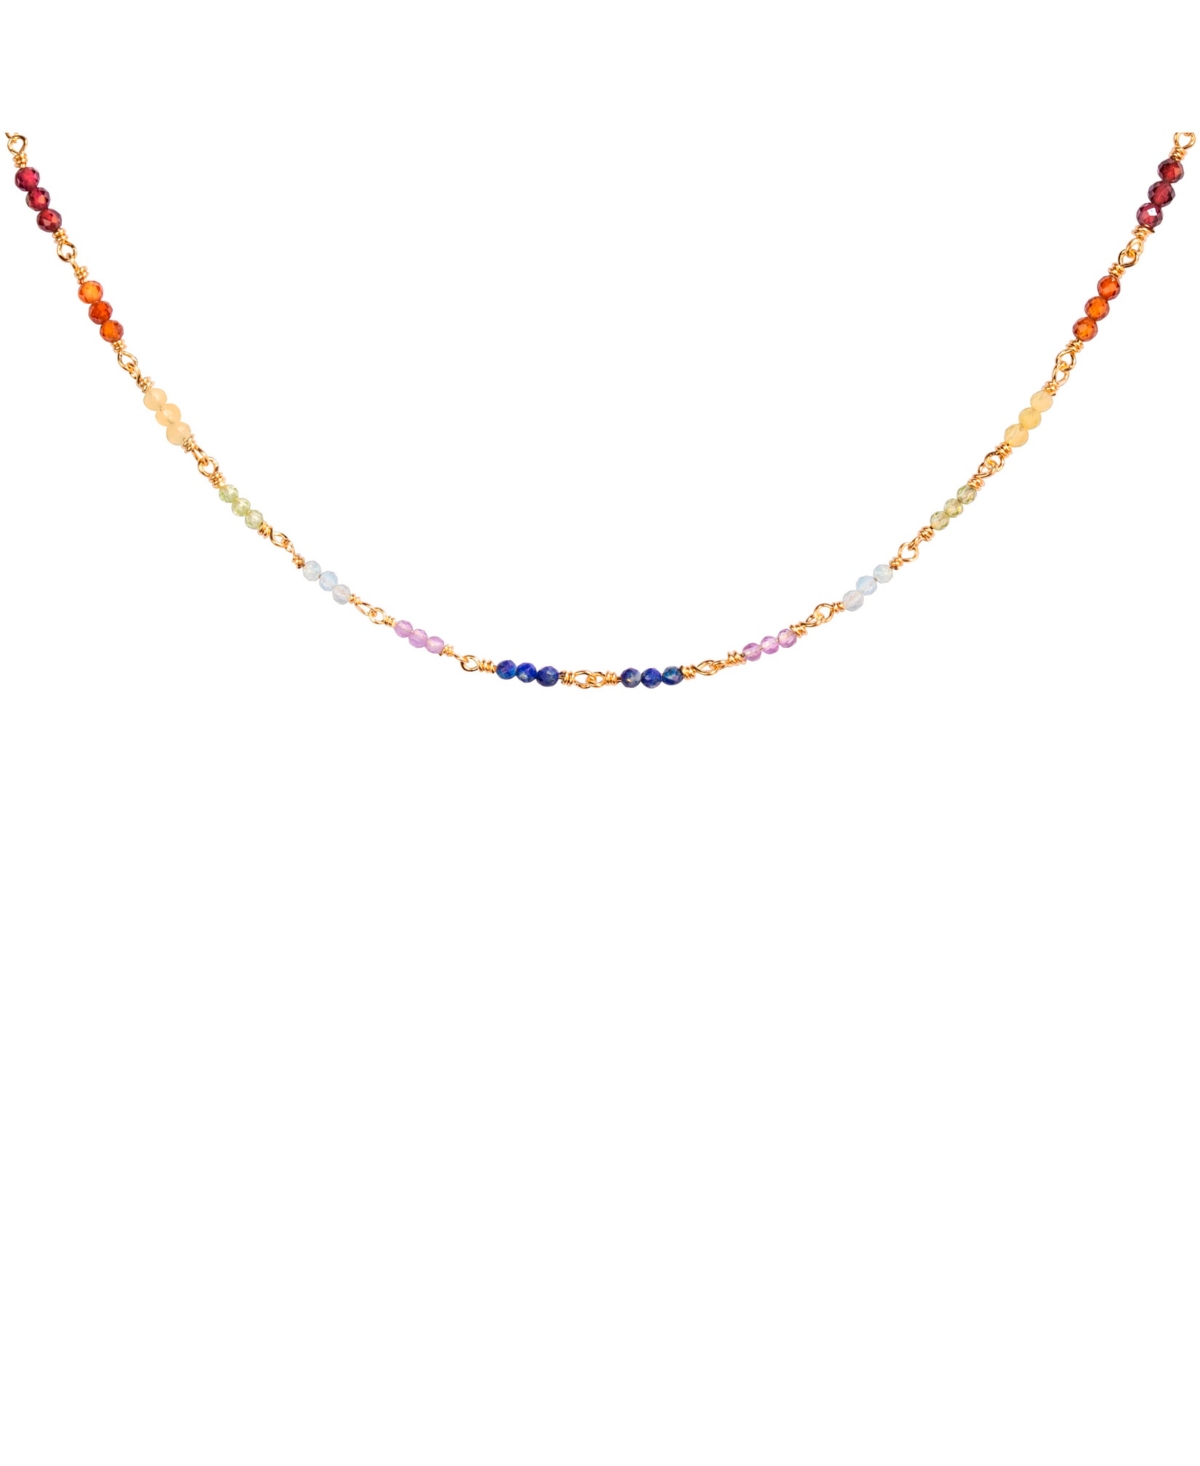 Spiritual Healing Chakra Choker Necklace - Gold/red/yellow/purple/blue